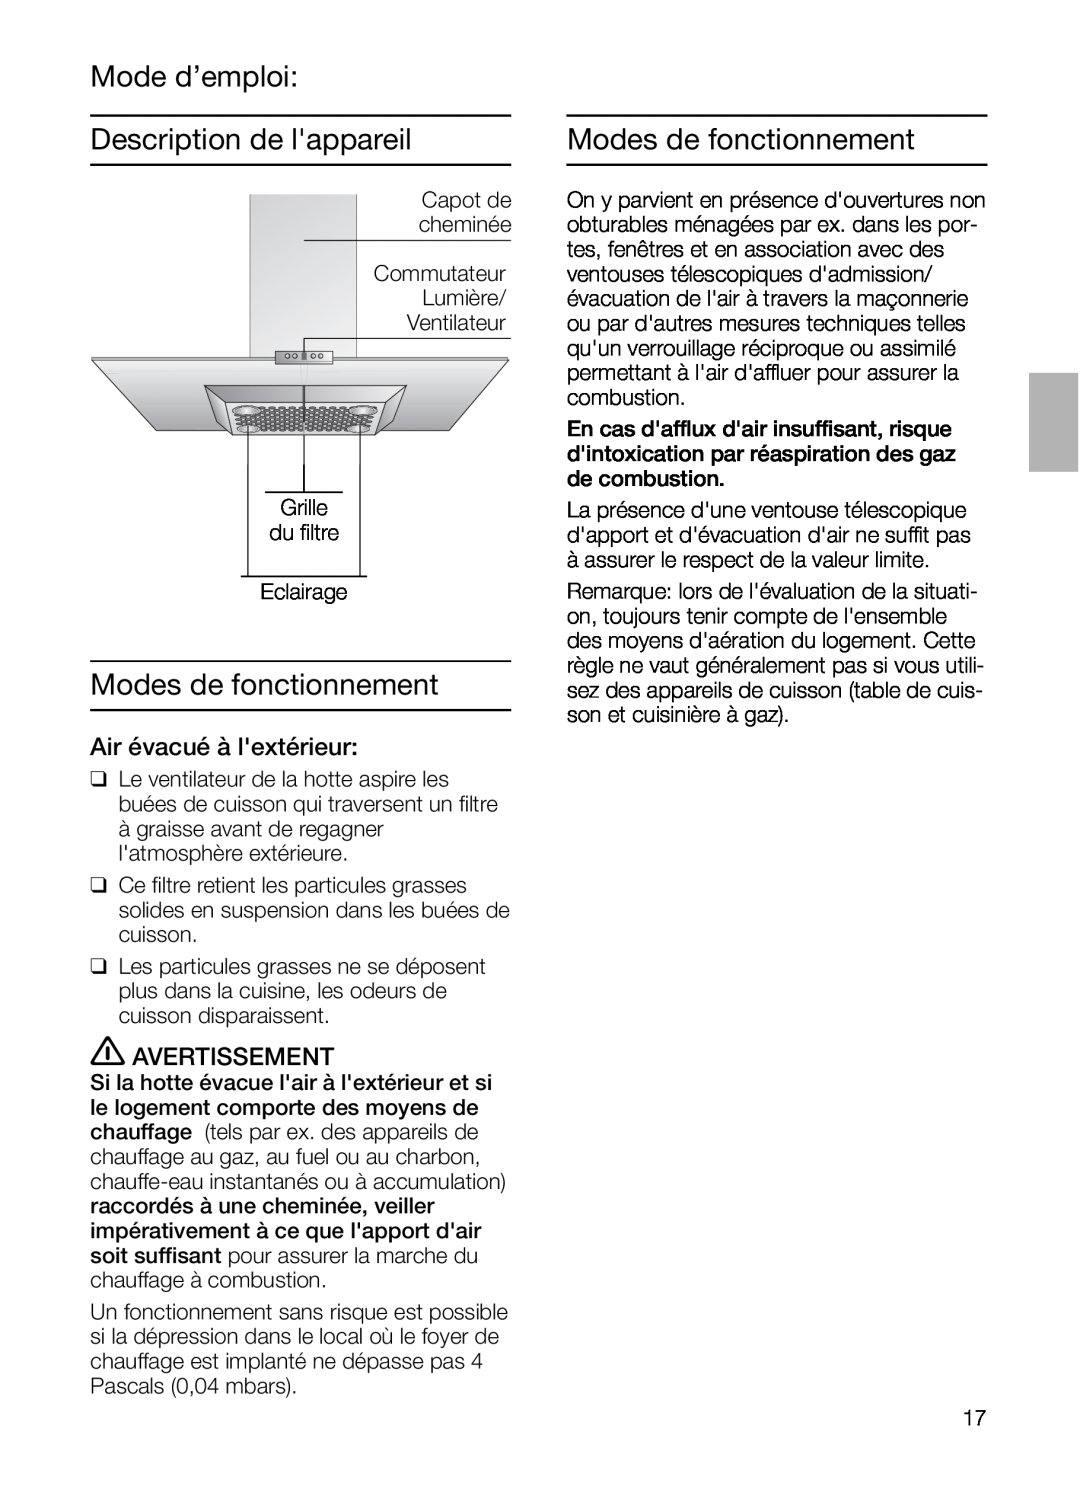 Bosch Appliances DIE 165 R manual Mode d’emploi Description de lappareil, Modes de fonctionnement, Air évacué à lextérieur 